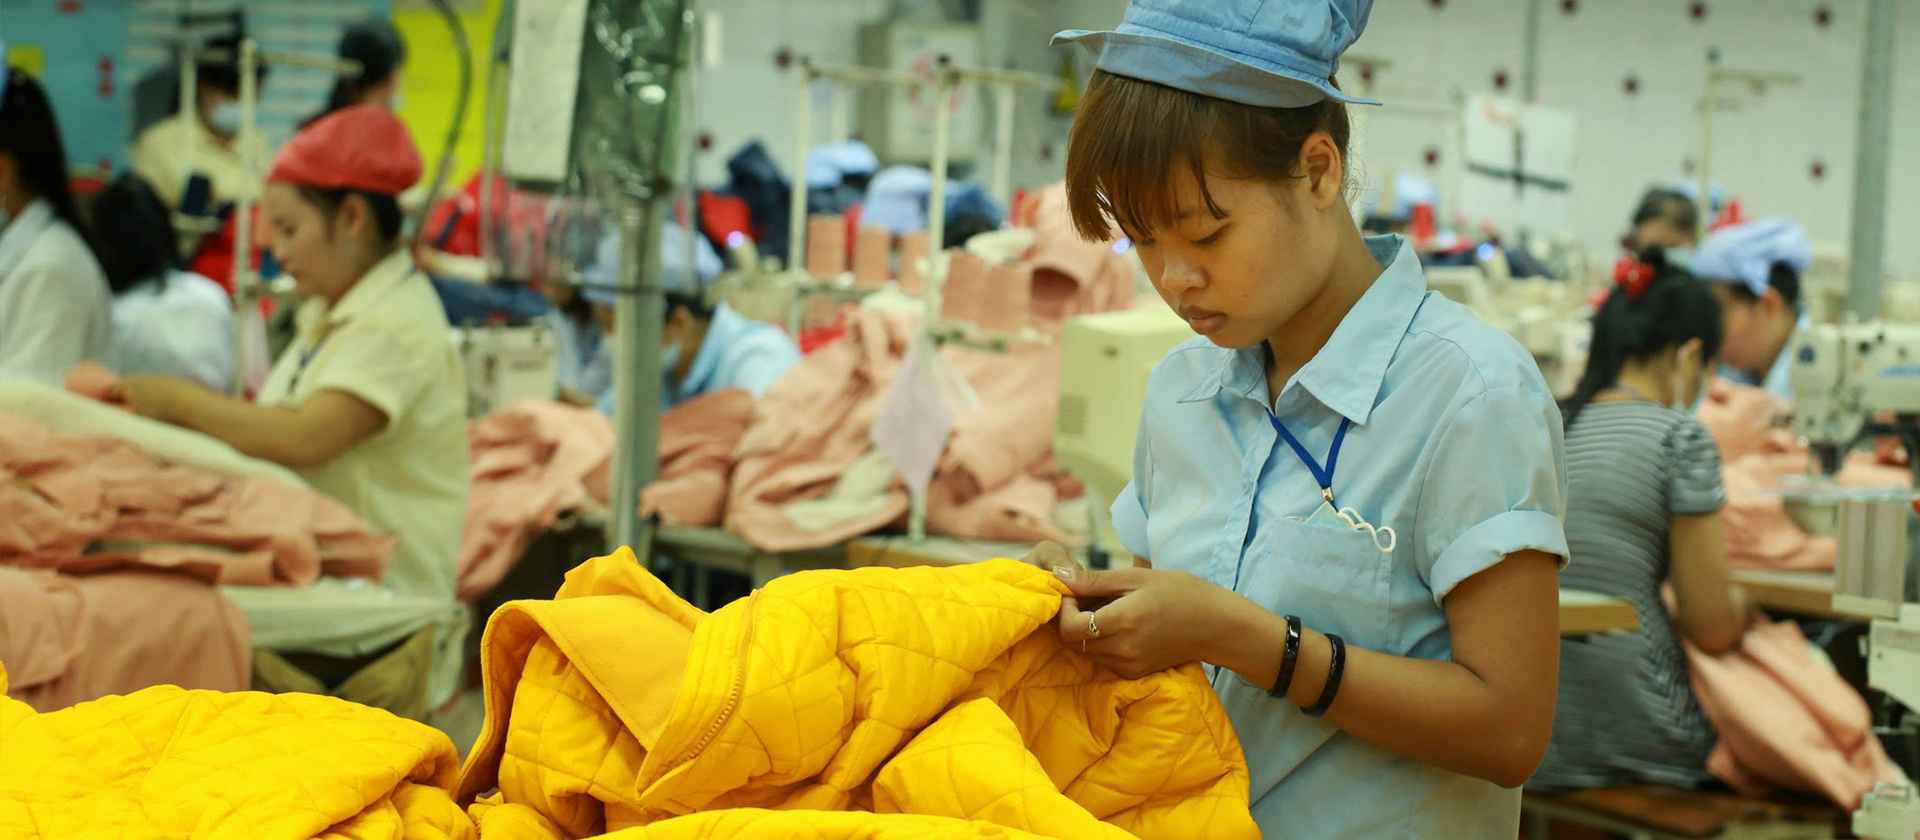 عمال في إحدى المصانع في فيتنام - الوظائف الأكثر طلباً في فيتنام